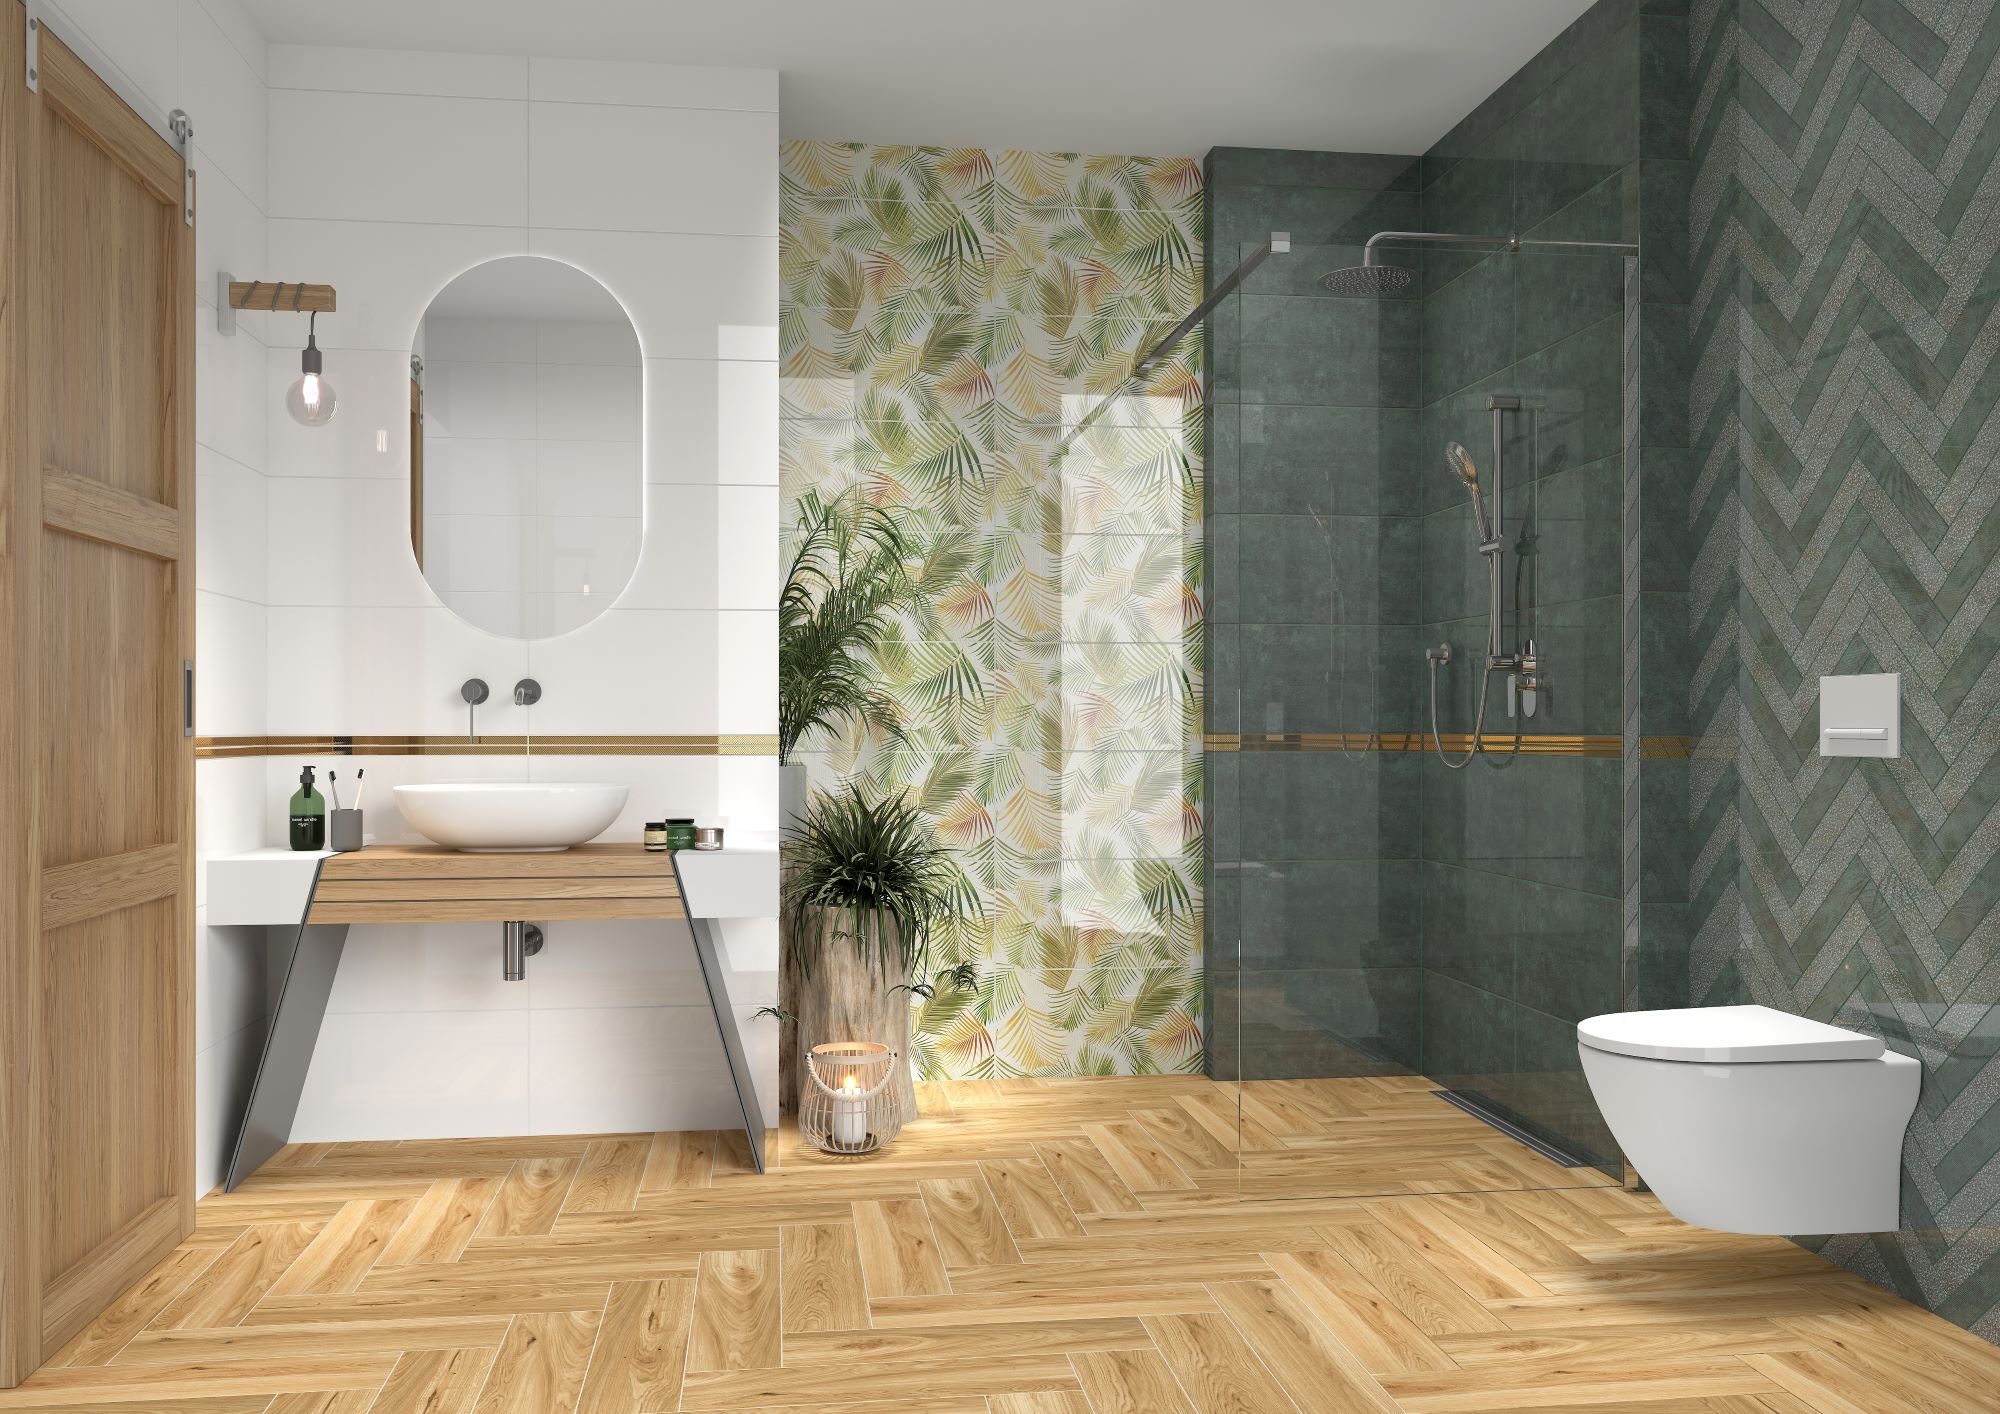 #Koupelna #Klasický styl #Naturální styl #bílá #zelená #Velký formát #Lesklý obklad #350 - 500 Kč/m2 #Tubadzin #Egzotica